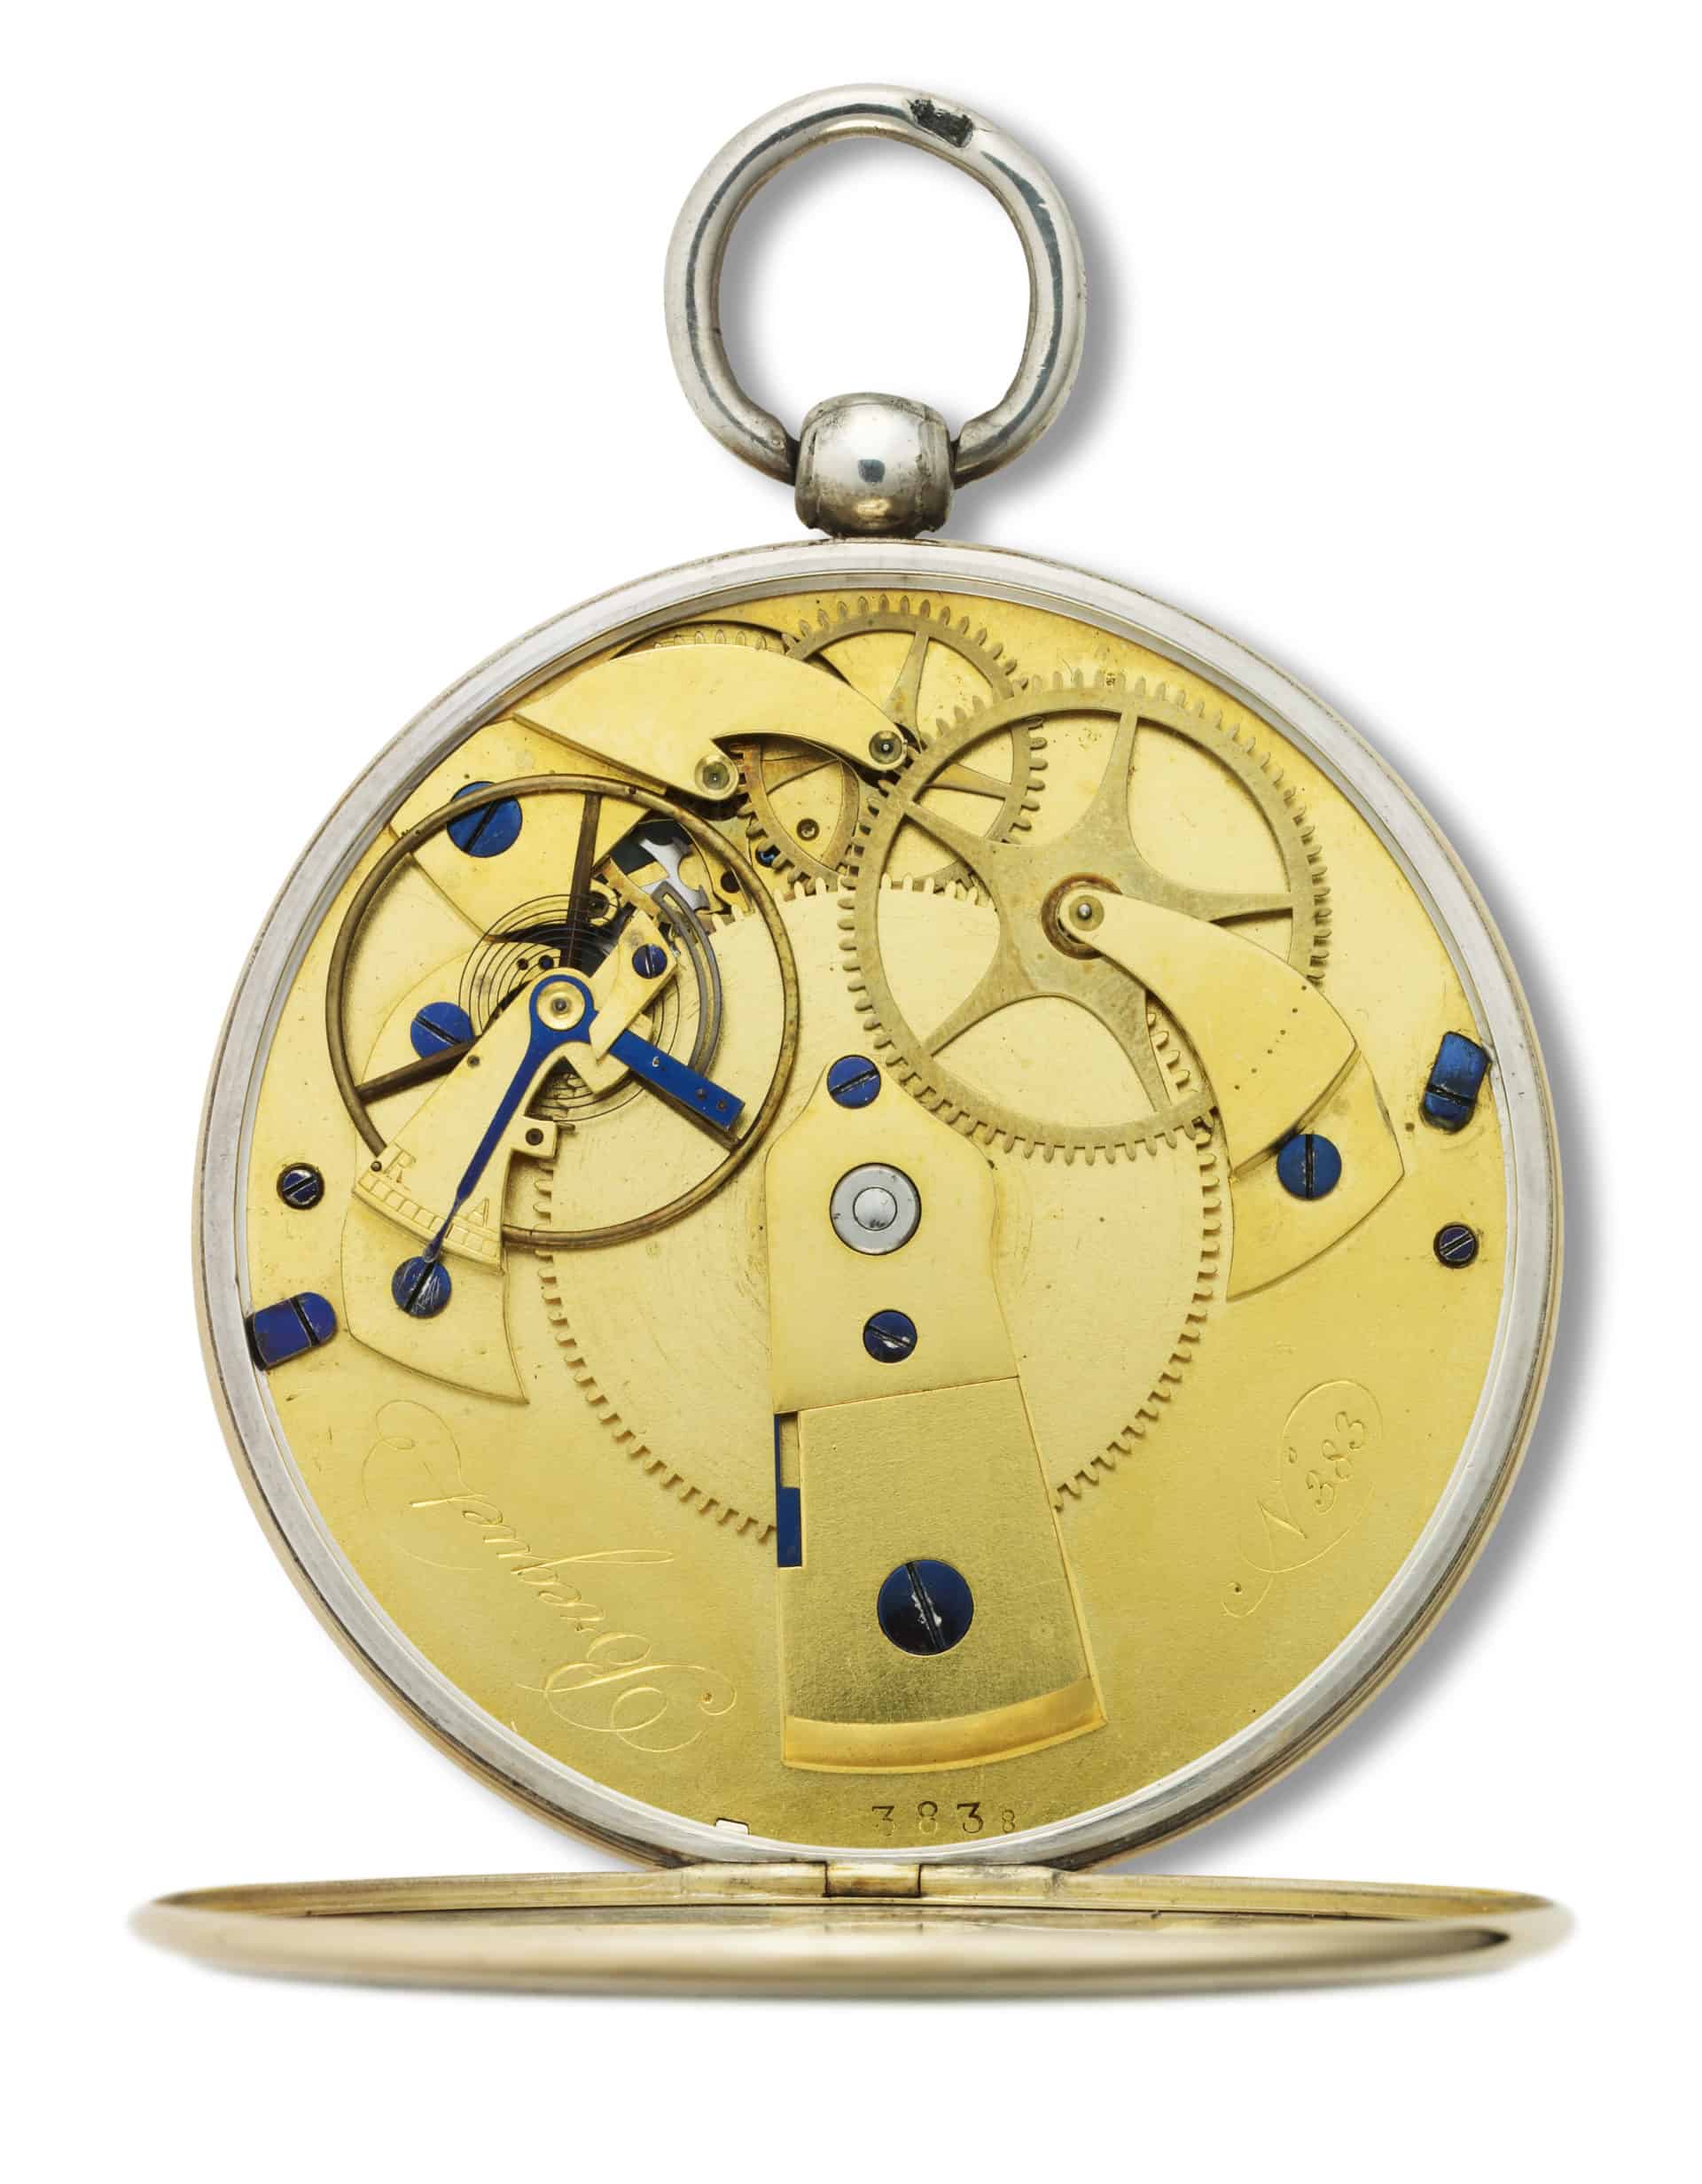  Uhrwerk der Breguet Taschenuhr No 383 mit der später patentierten Parachute Stosssicherung